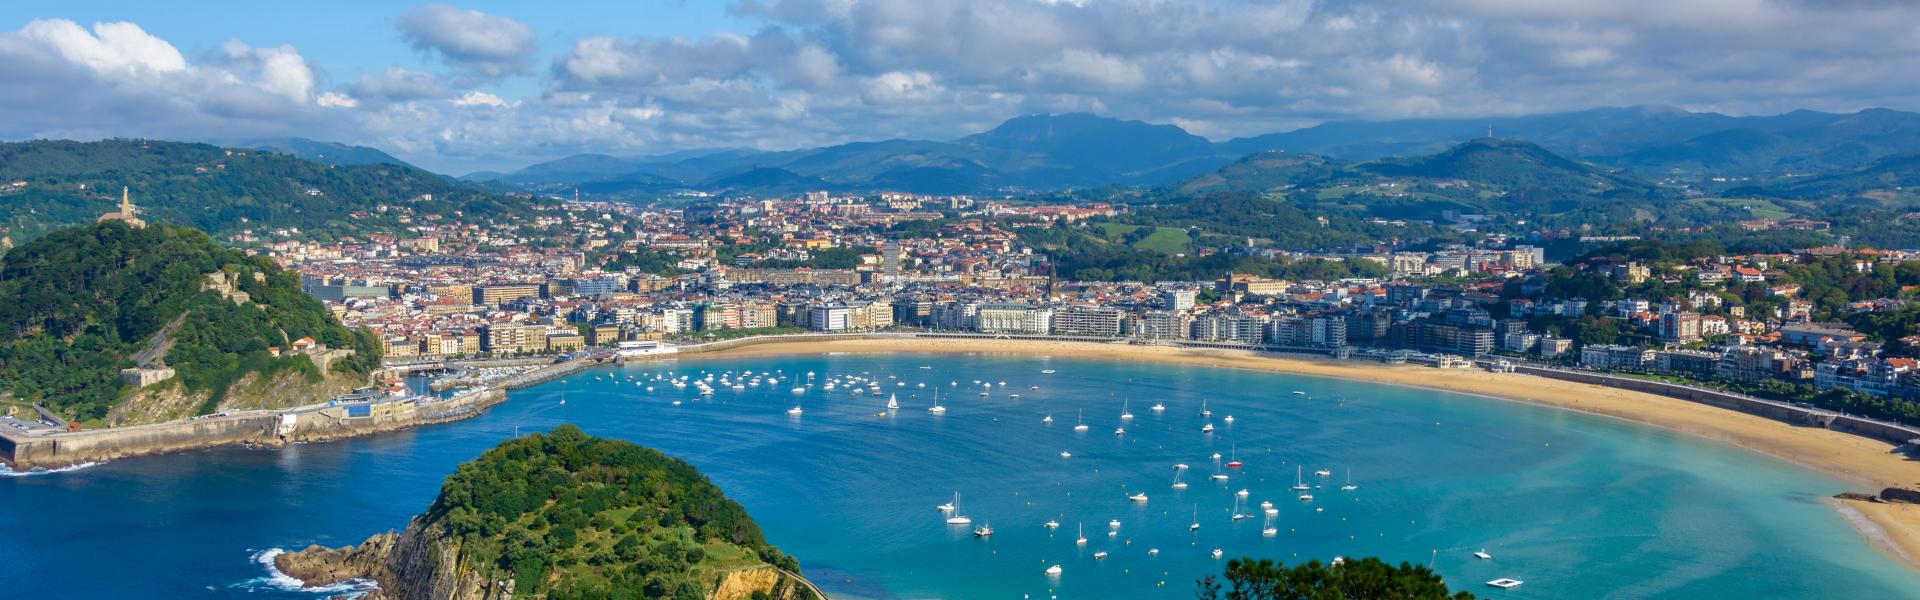 Case vacanze nei Paesi Baschi: Benvenuti nella terra delle tradizioni! - Casamundo